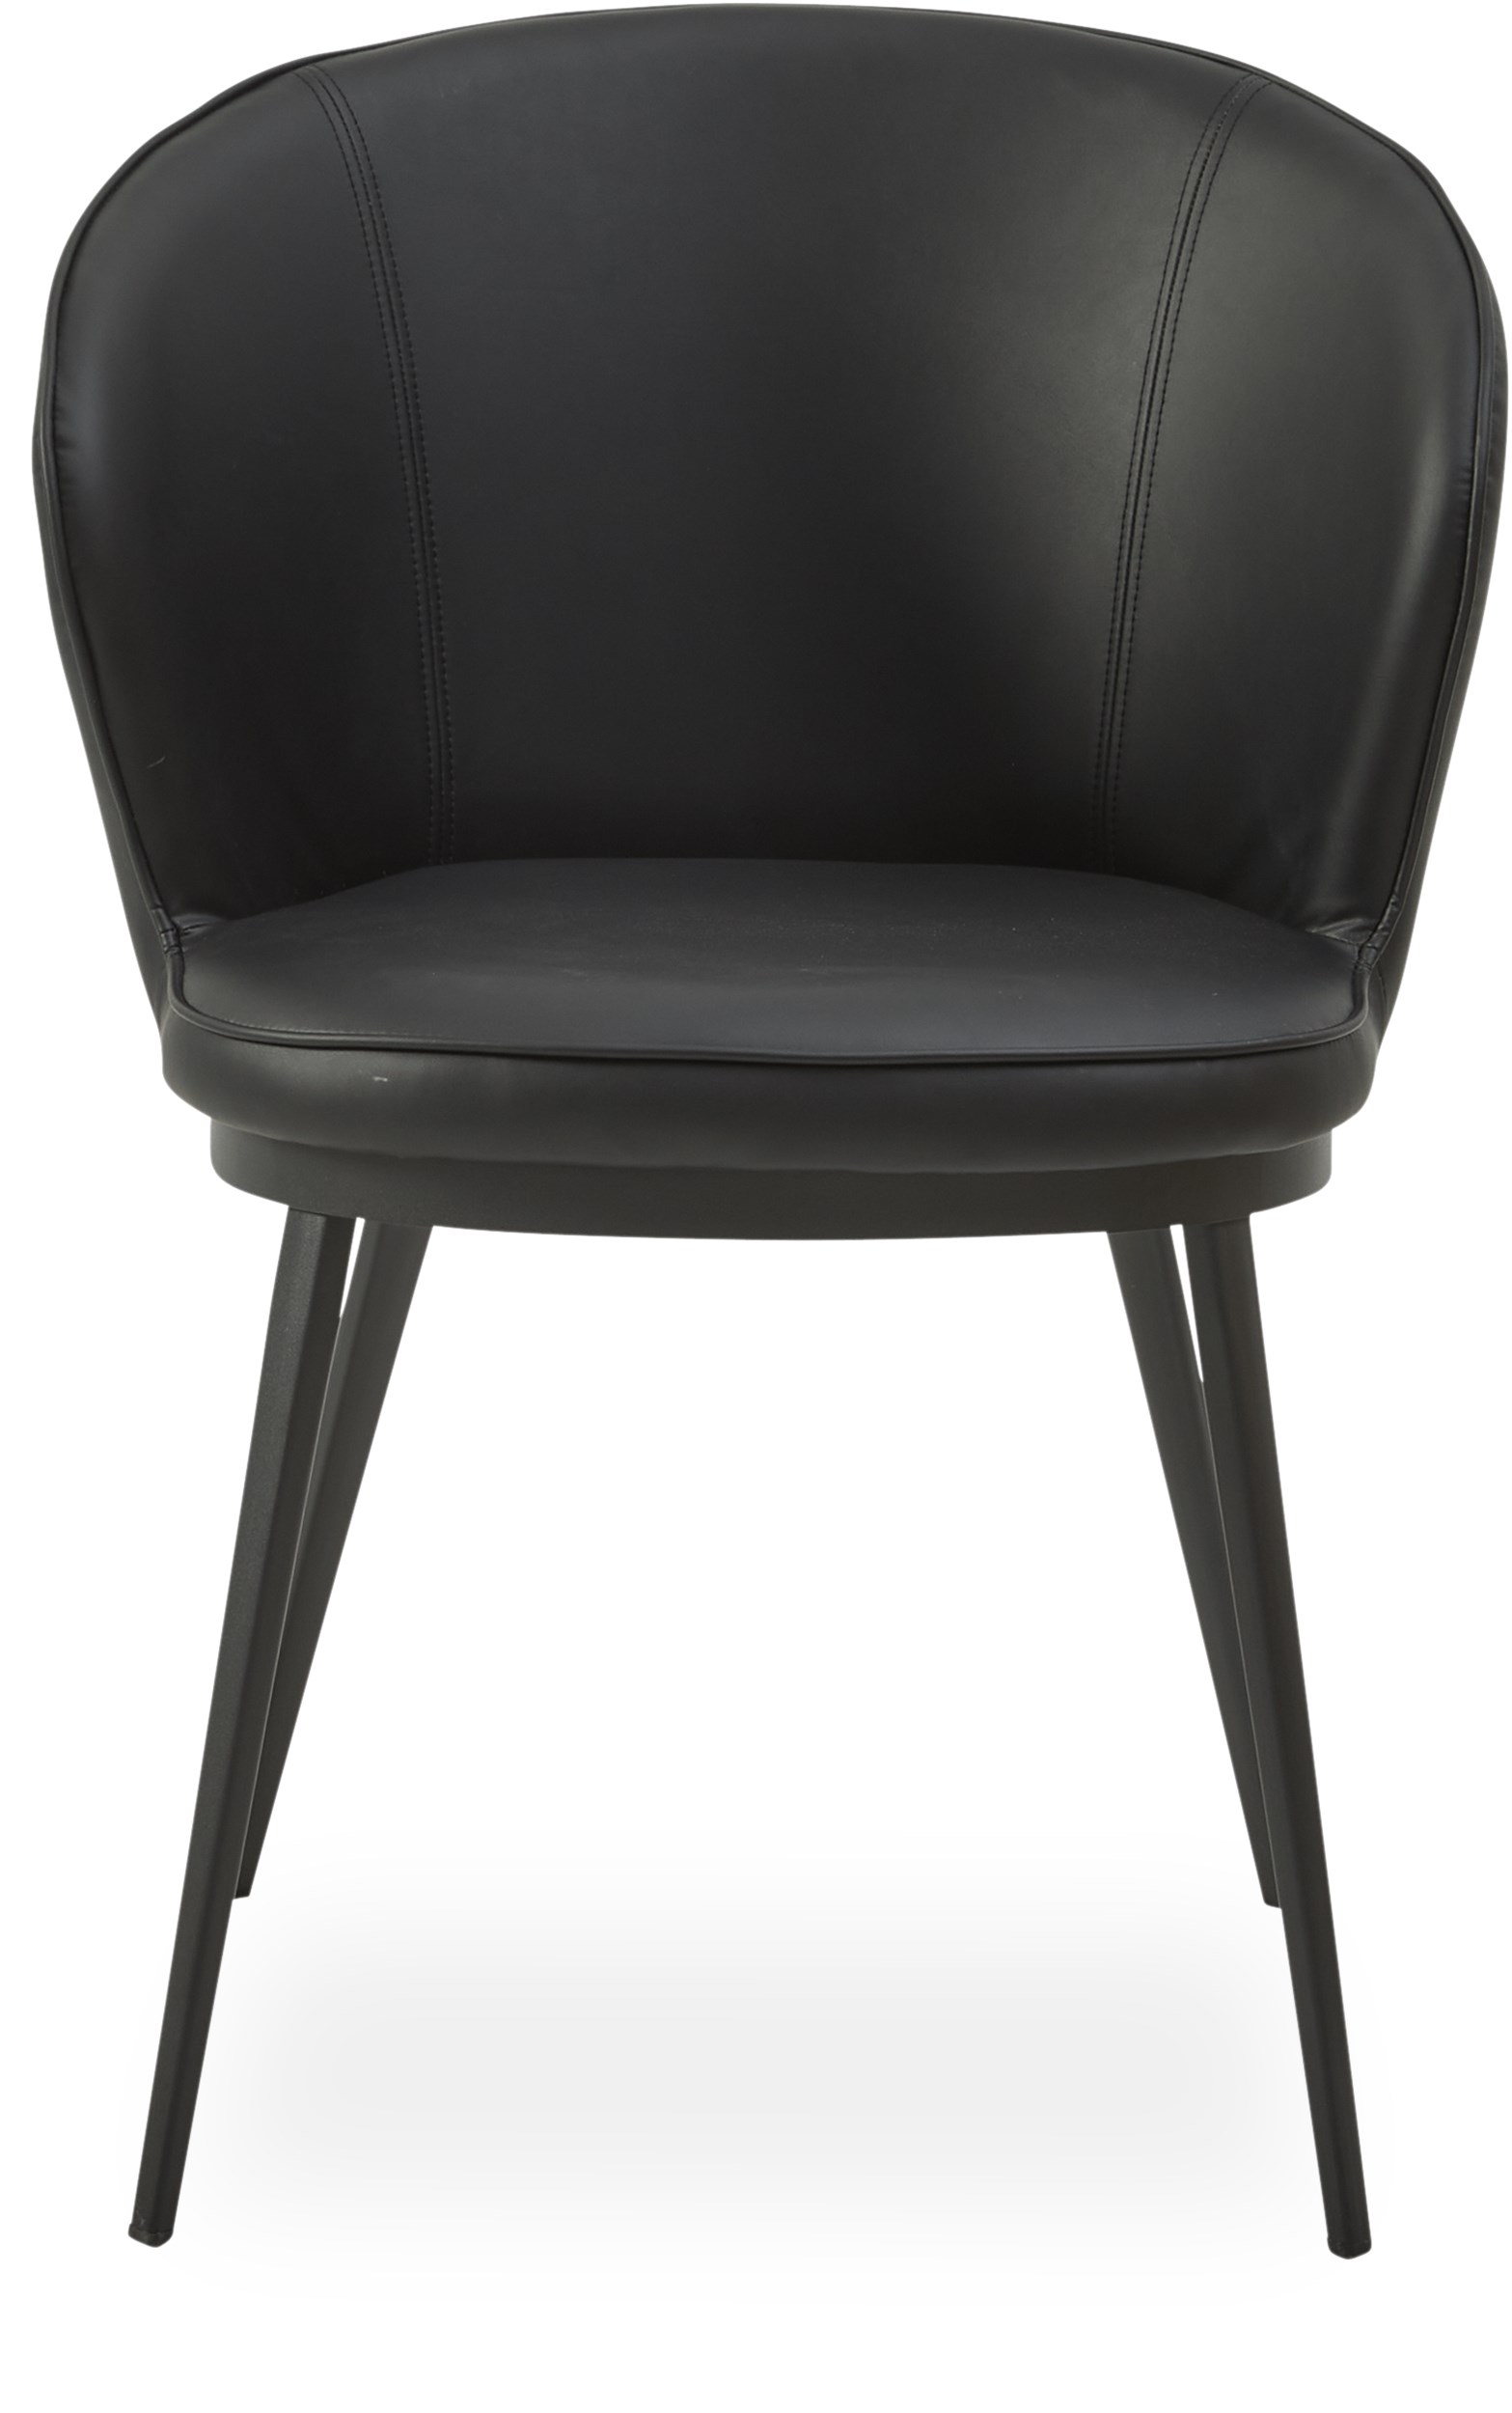 Gain Spisebordsstol - Sæde i sort kunstlæder og ben i sort pulverlakeret metal